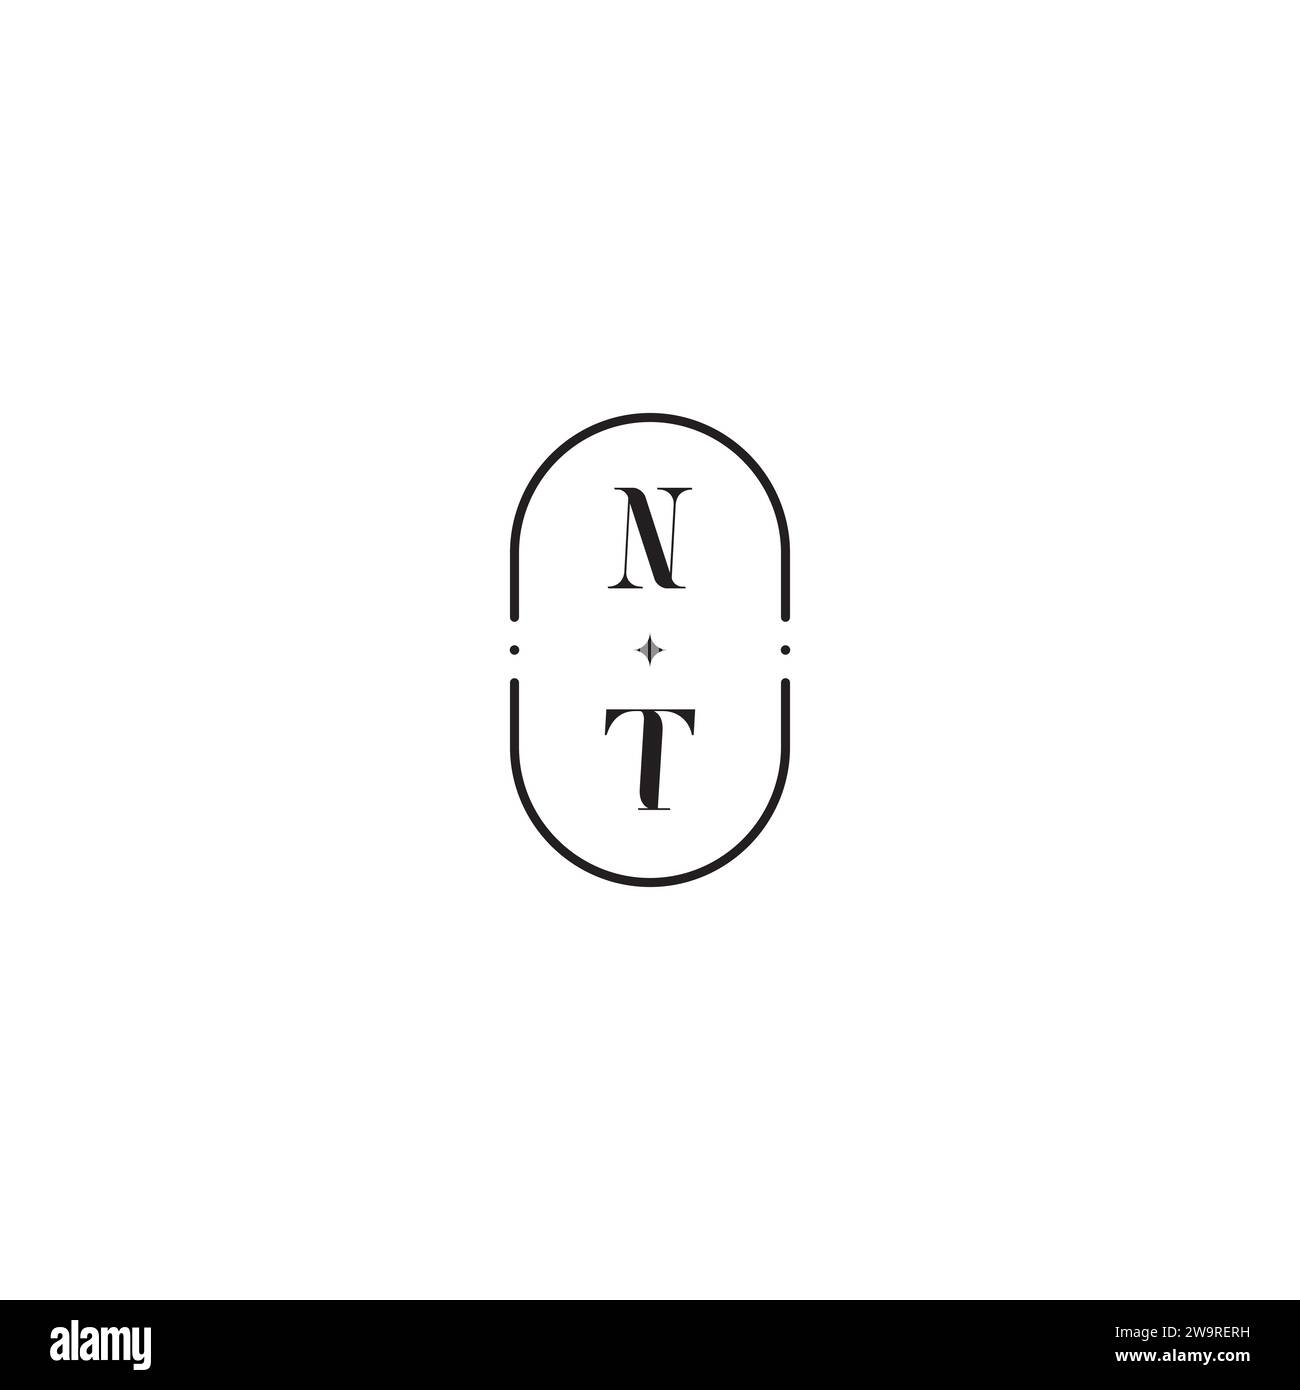 Logo nuziale NT in un design professionale di alta qualità che si adatta perfettamente a qualsiasi supporto di stampa Illustrazione Vettoriale